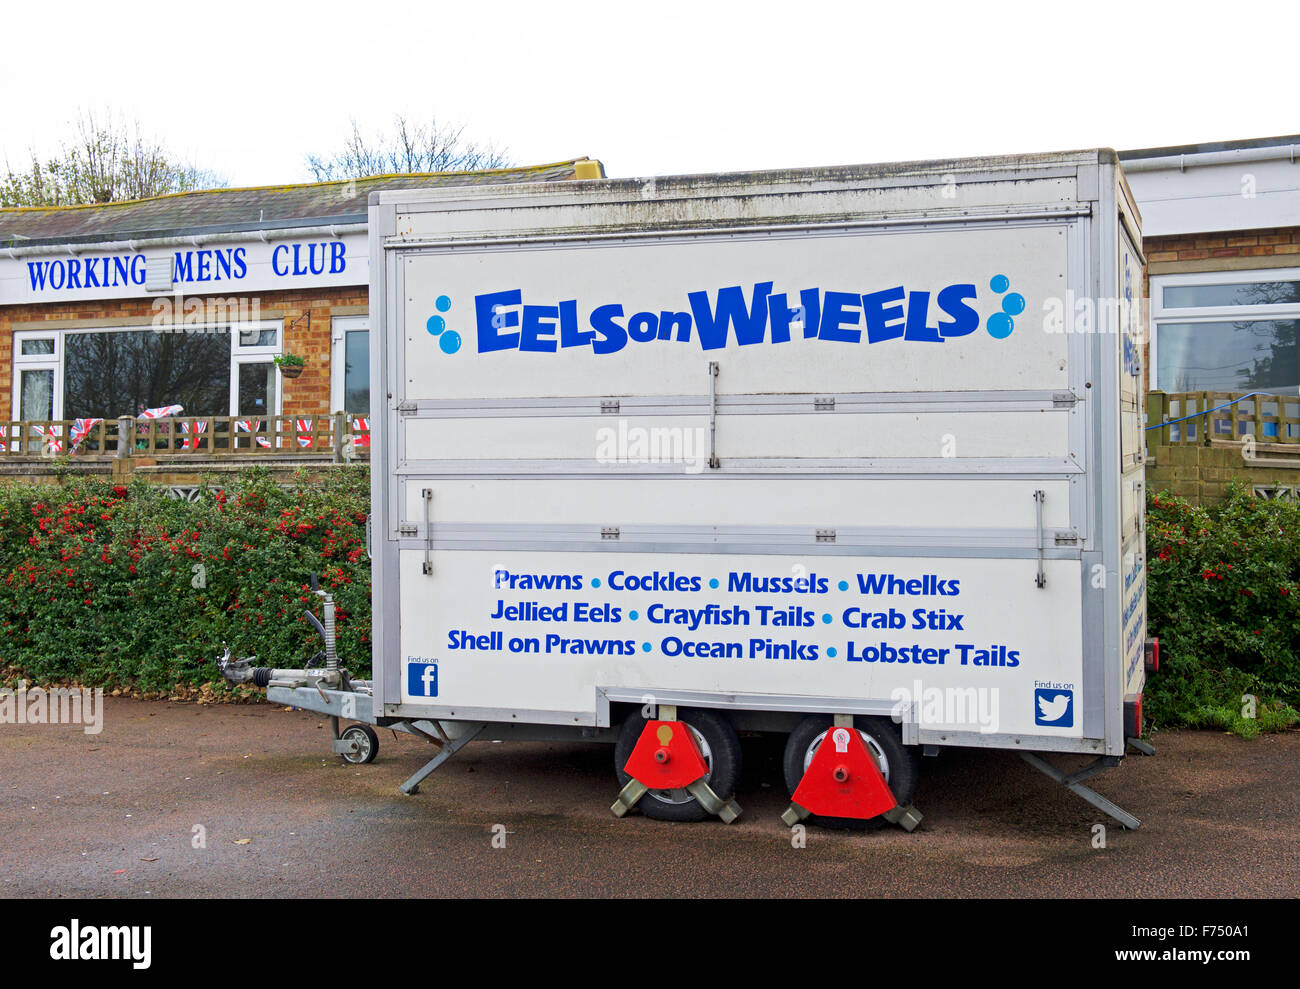 Puesto de comida - anguilas sobre ruedas - aparcamos fuera Working Mens Club, isla de Sheppey, Kent, Inglaterra Foto de stock